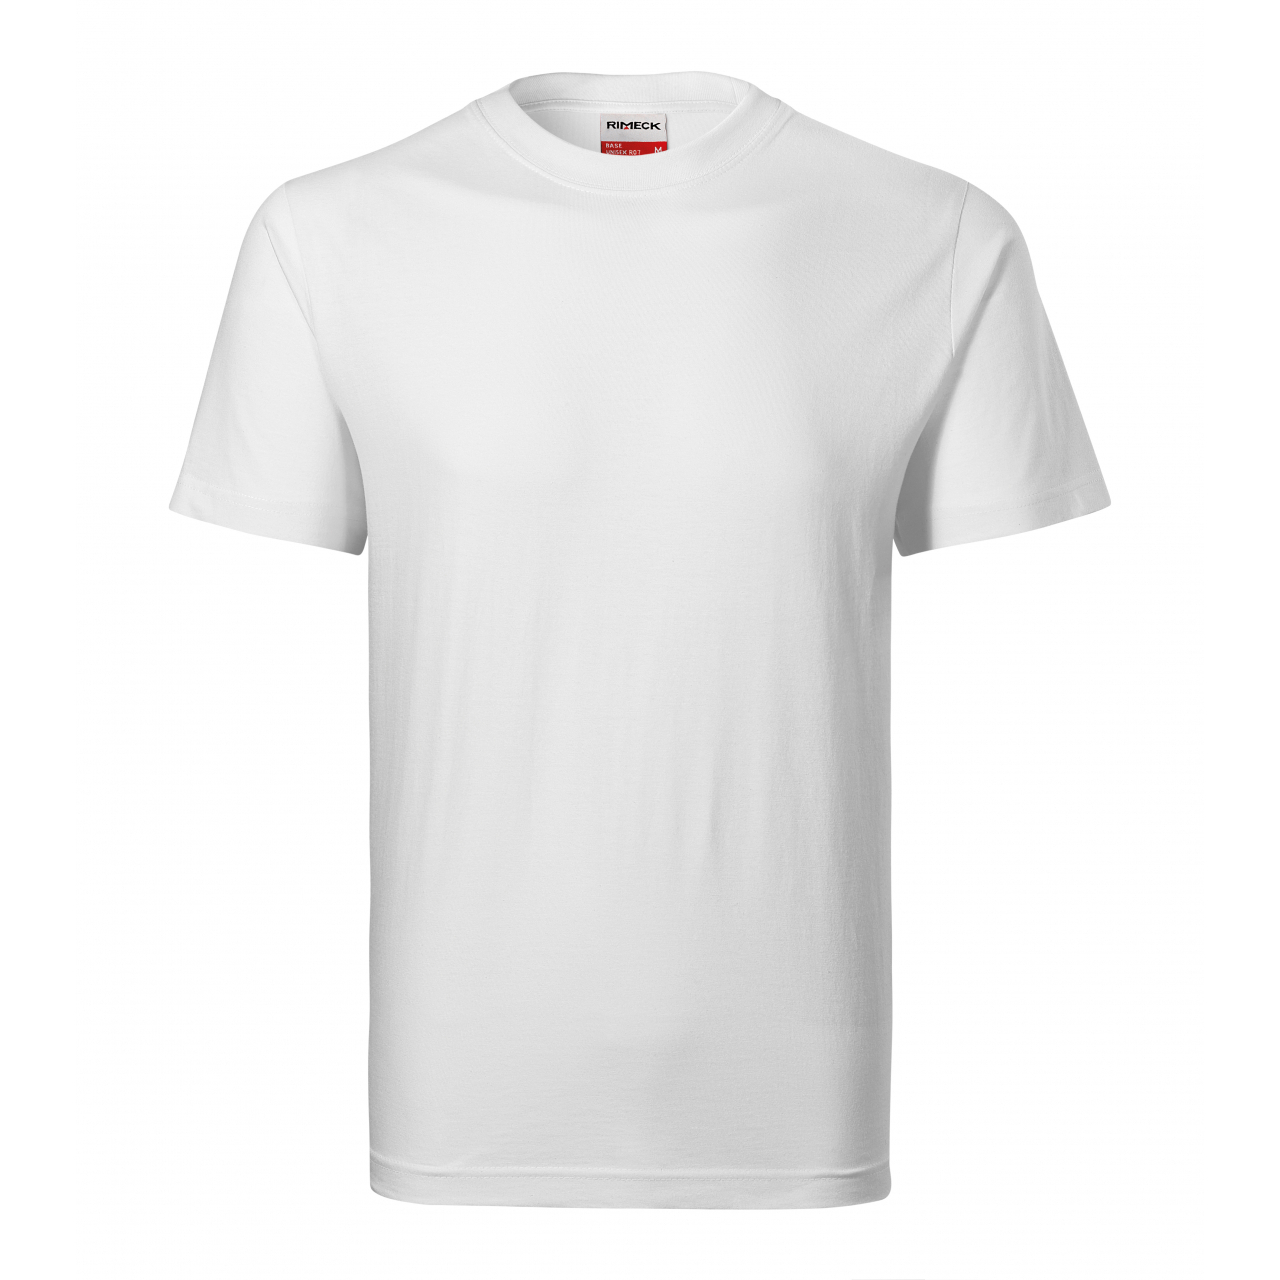 Tričko unisex Rimeck Recall - bílé, XL